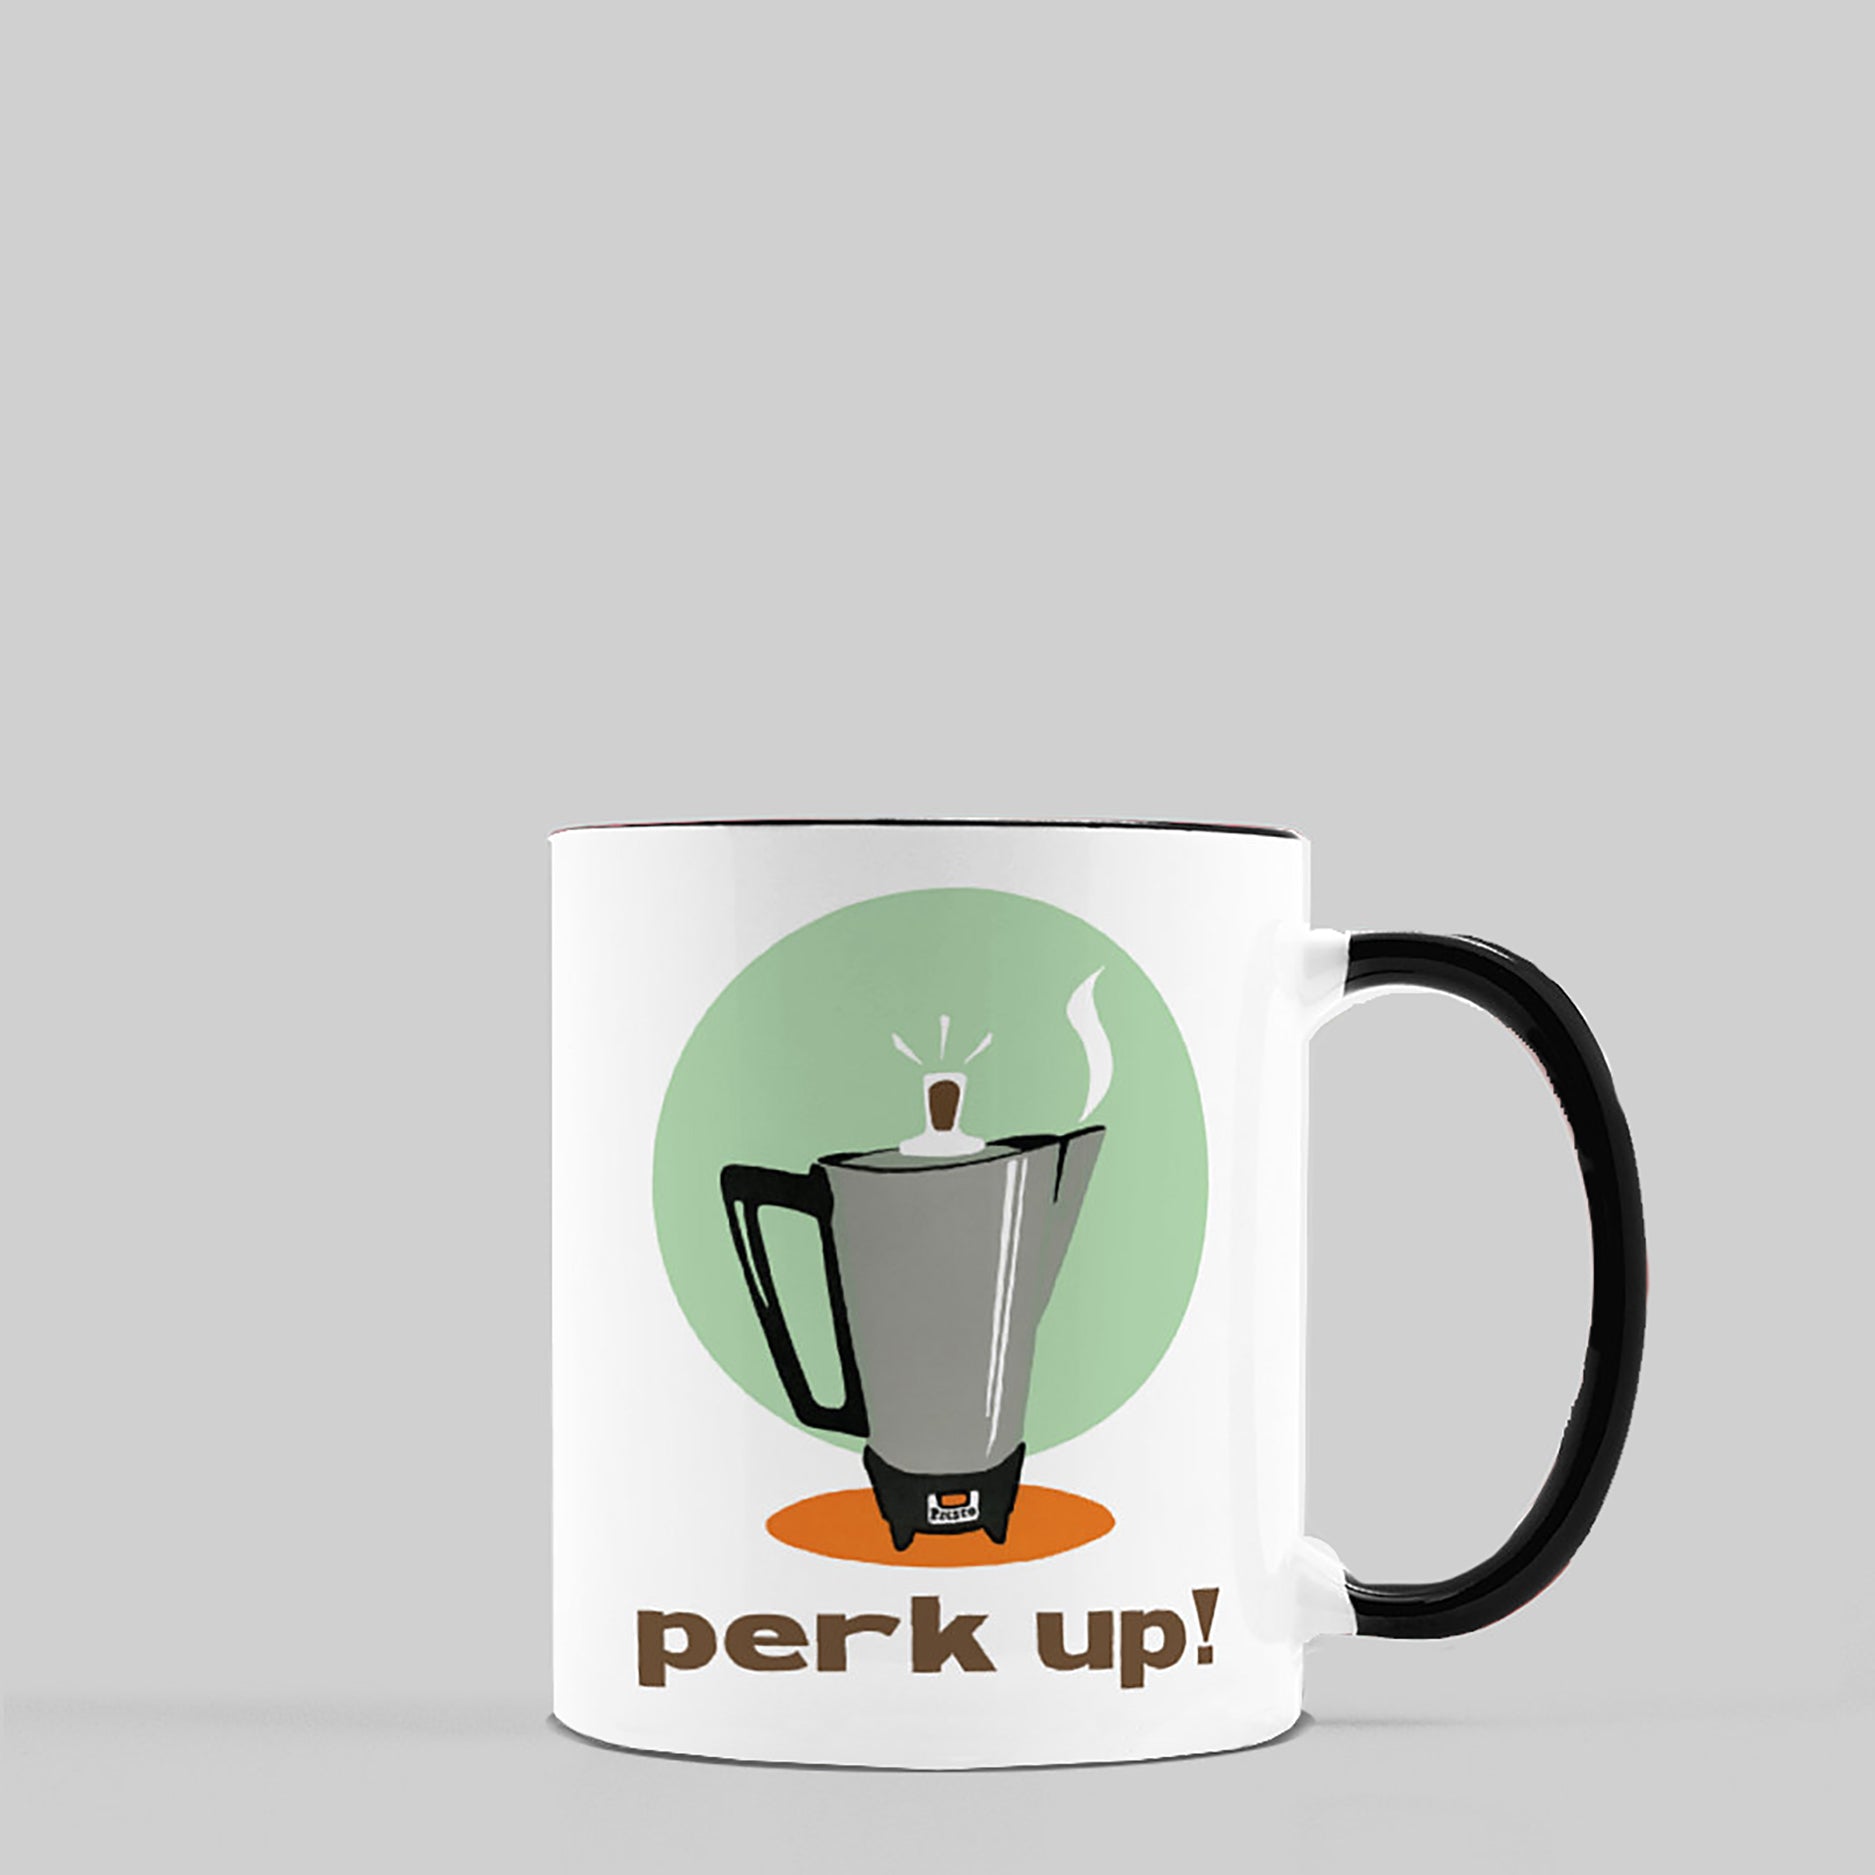 Perk Up! Ceramic Coffee Mug, 11oz